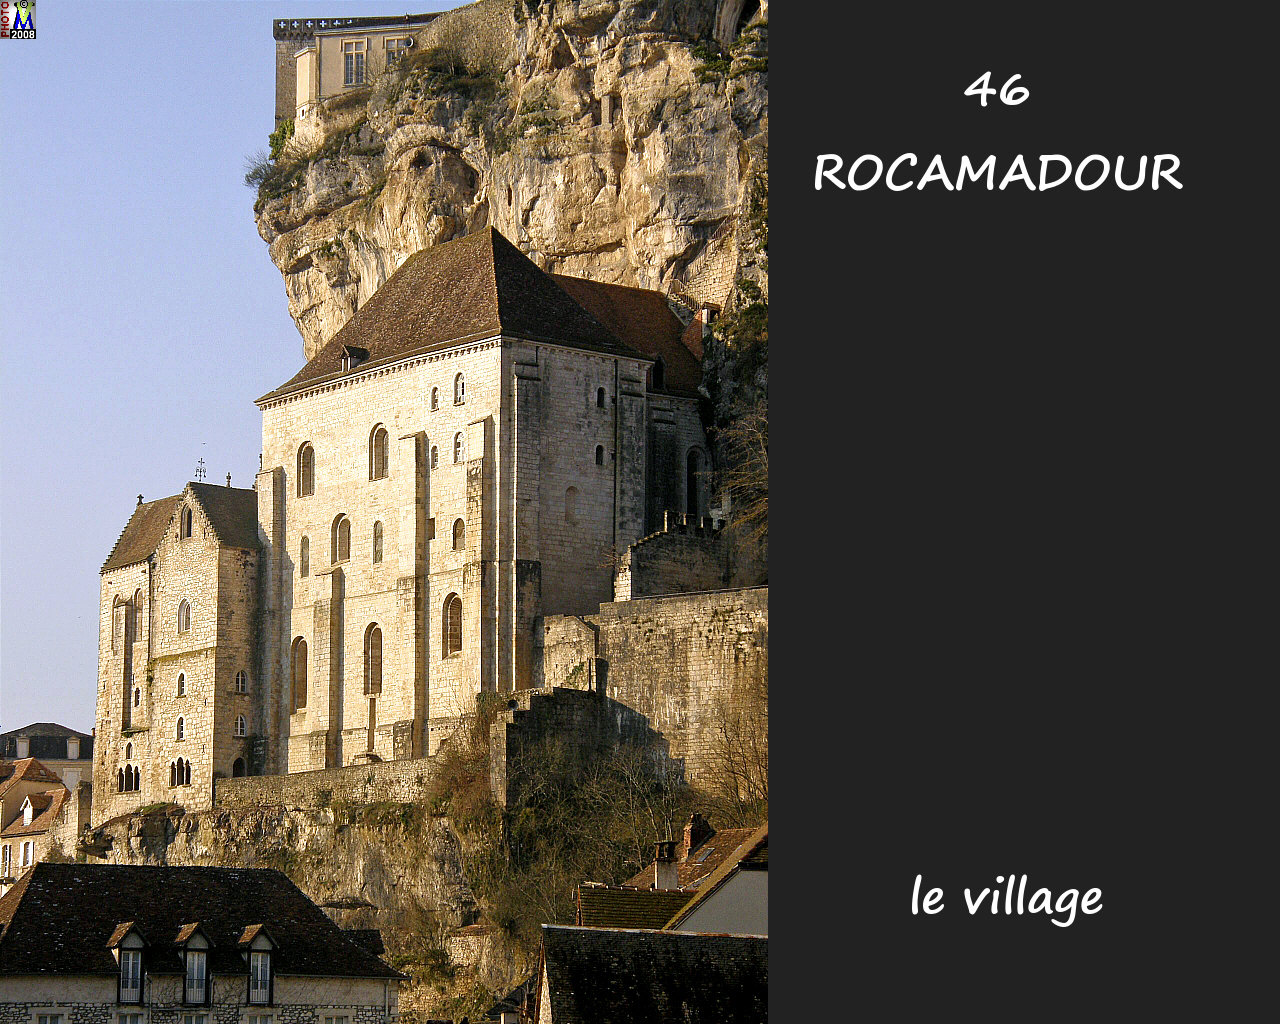 46ROCAMADOUR_village_204.jpg